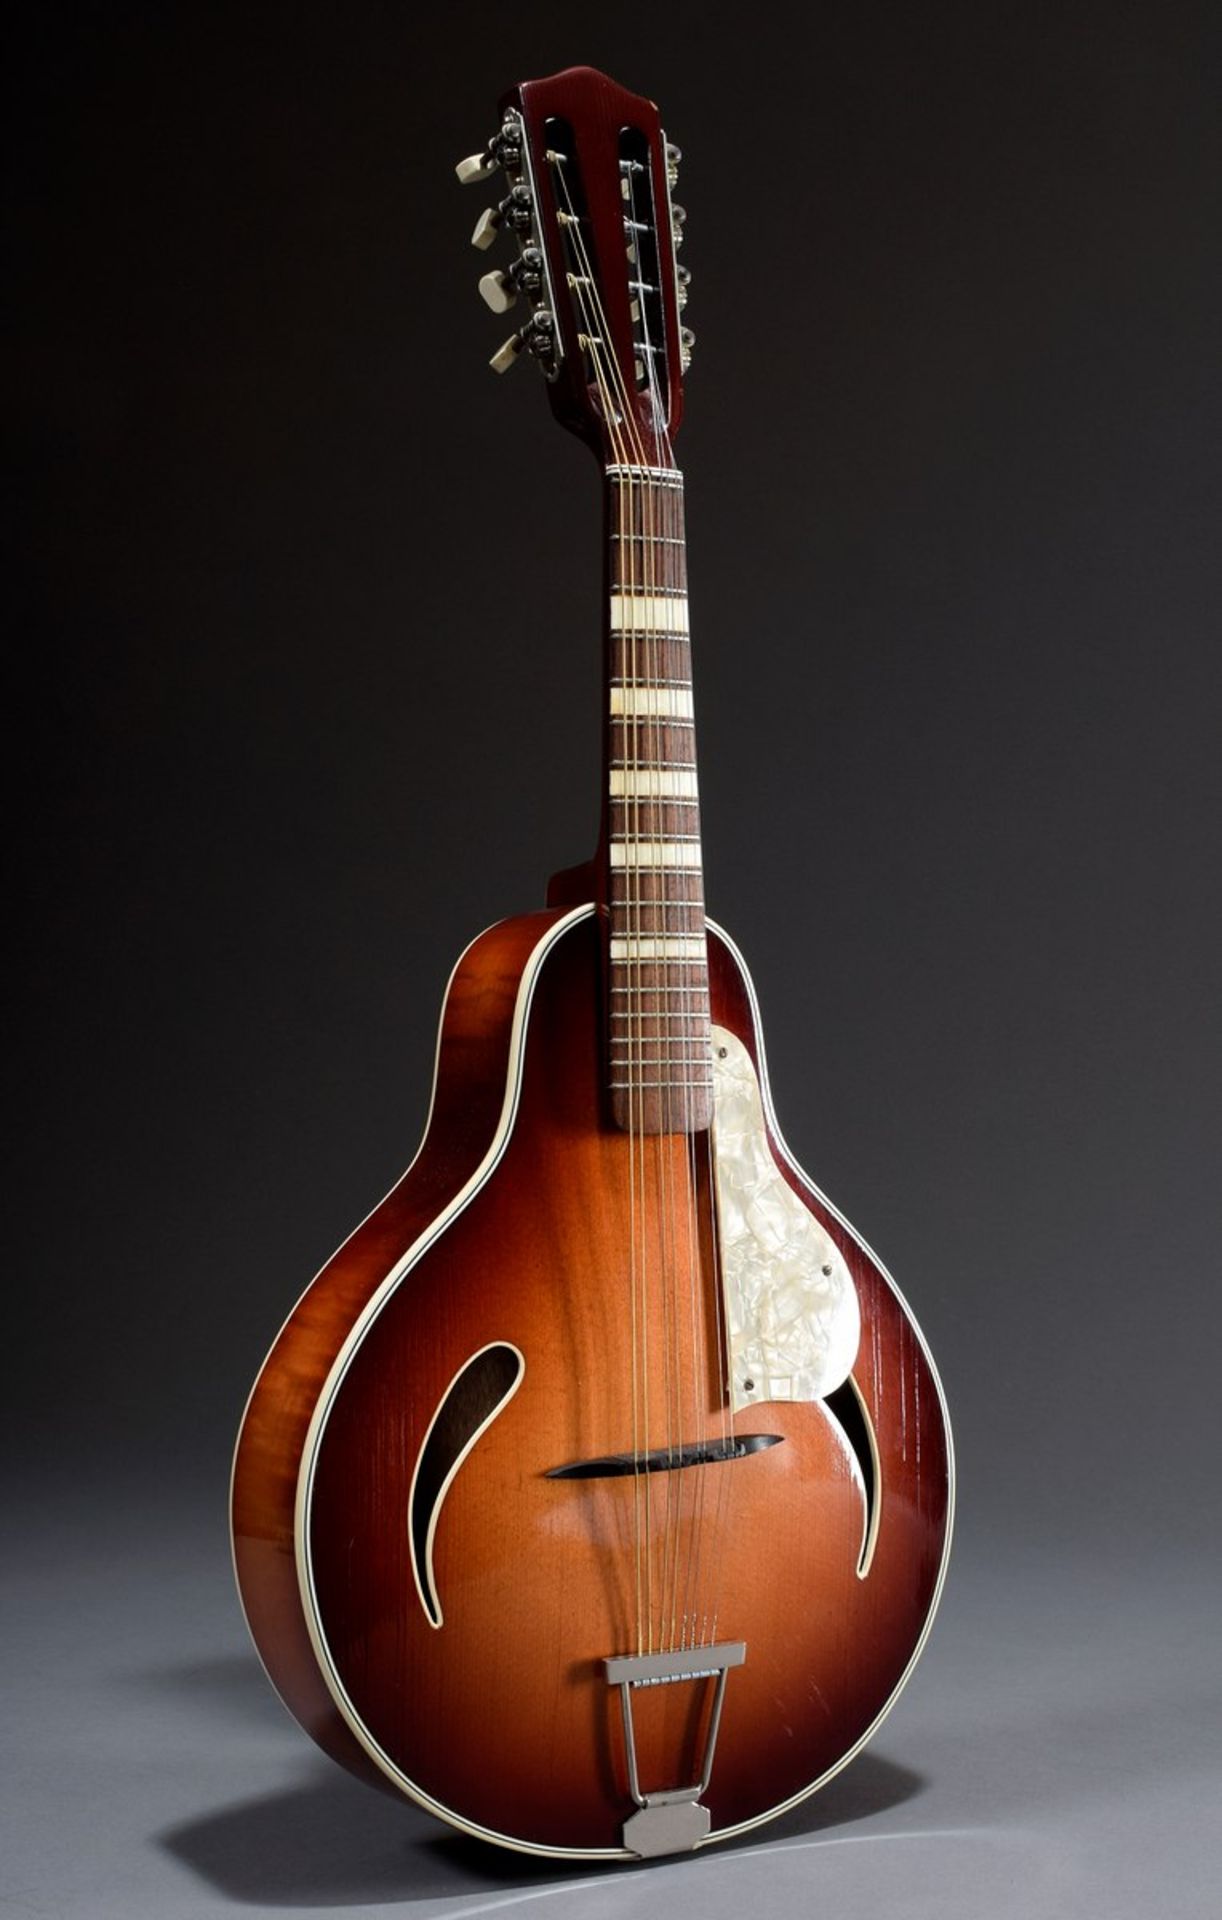 Jazz Mandoline "Cat Eye" von Höfner, Modell 542, um 1950/60, Korpuslänge 33cm, Gesamtlänge 63,5cm,